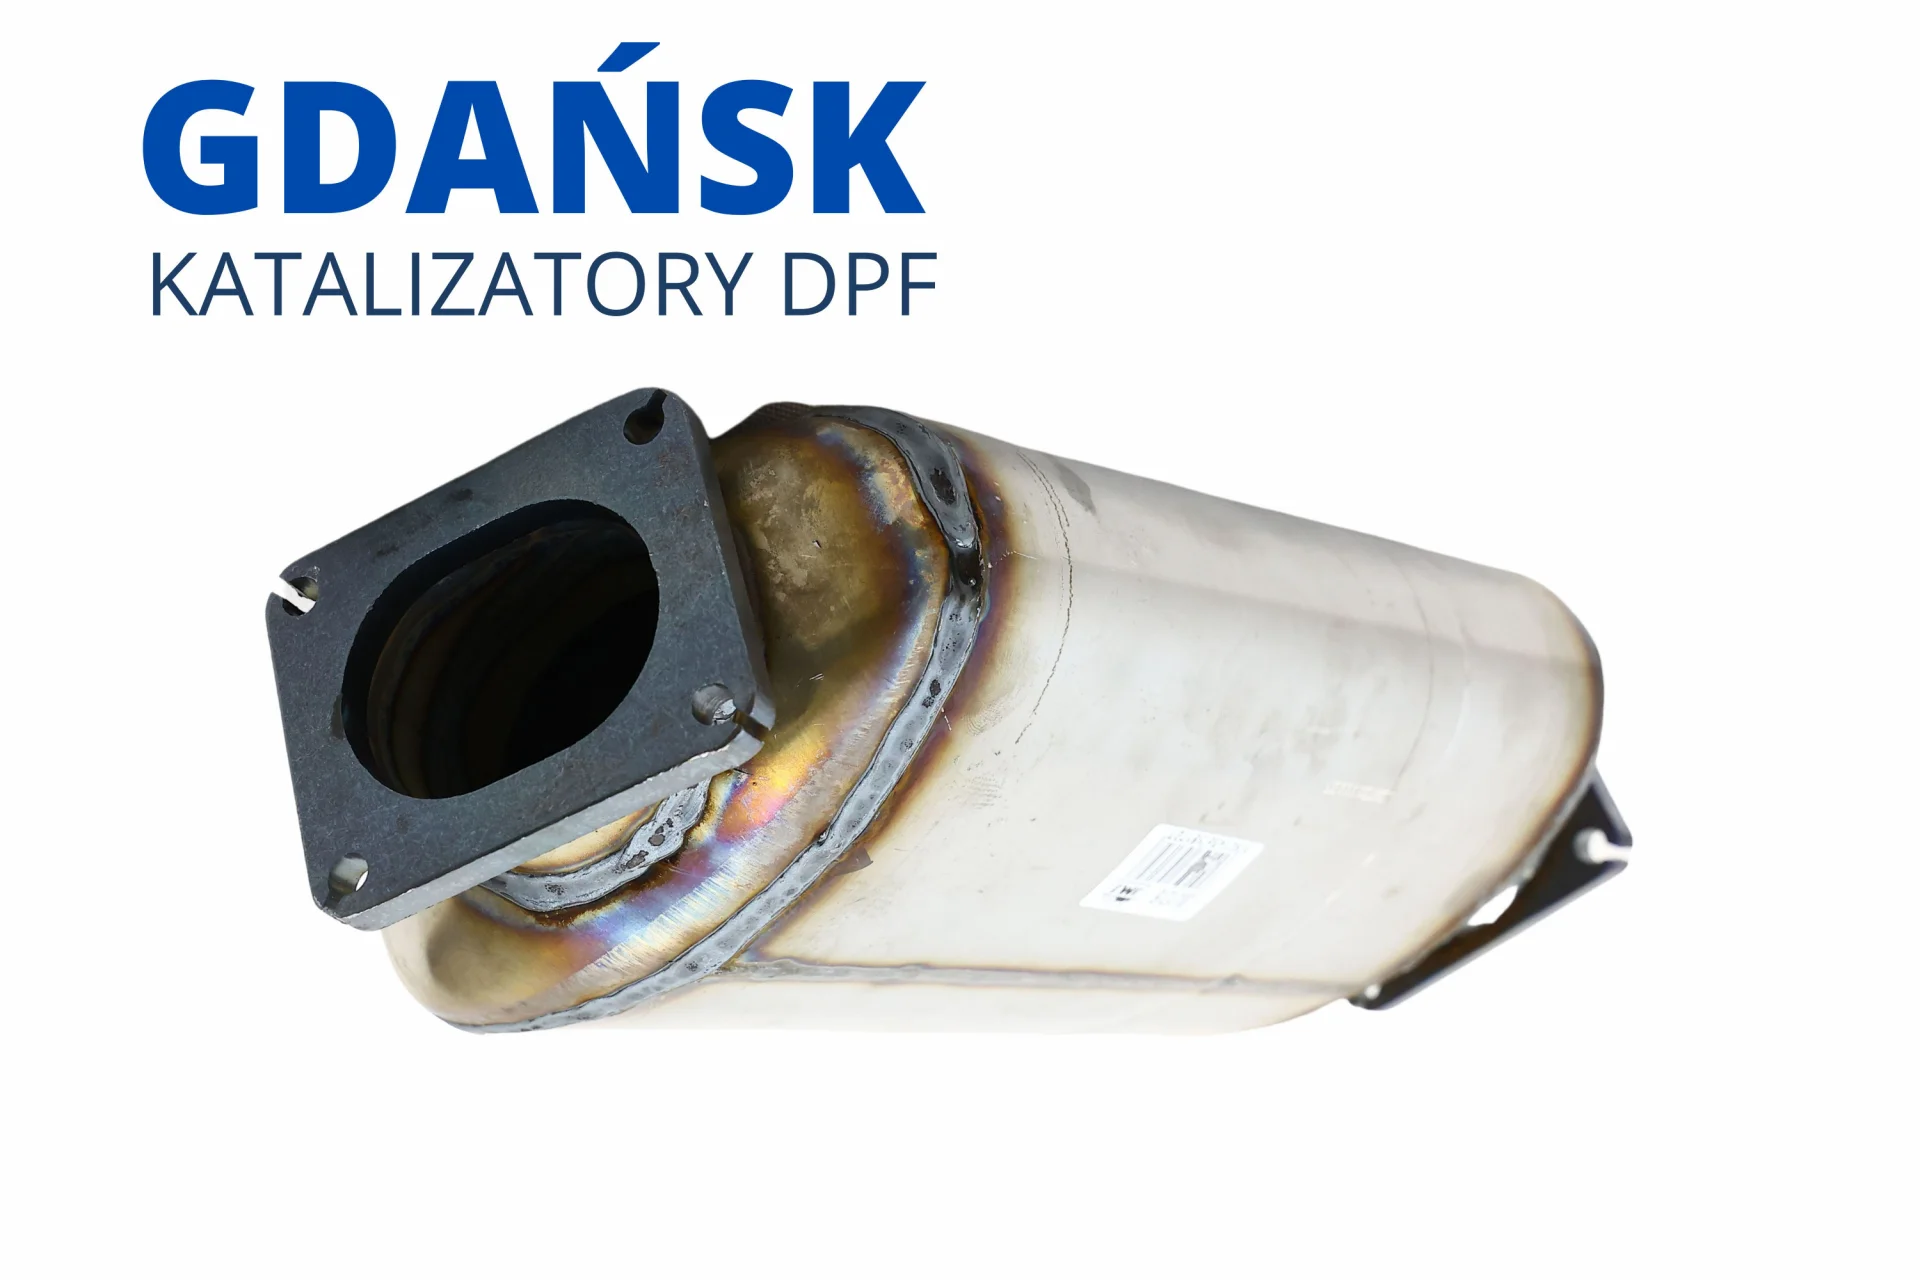 Serwis DPF katalizatorów Gdańsk regeneracja i czyszczenie cennik 